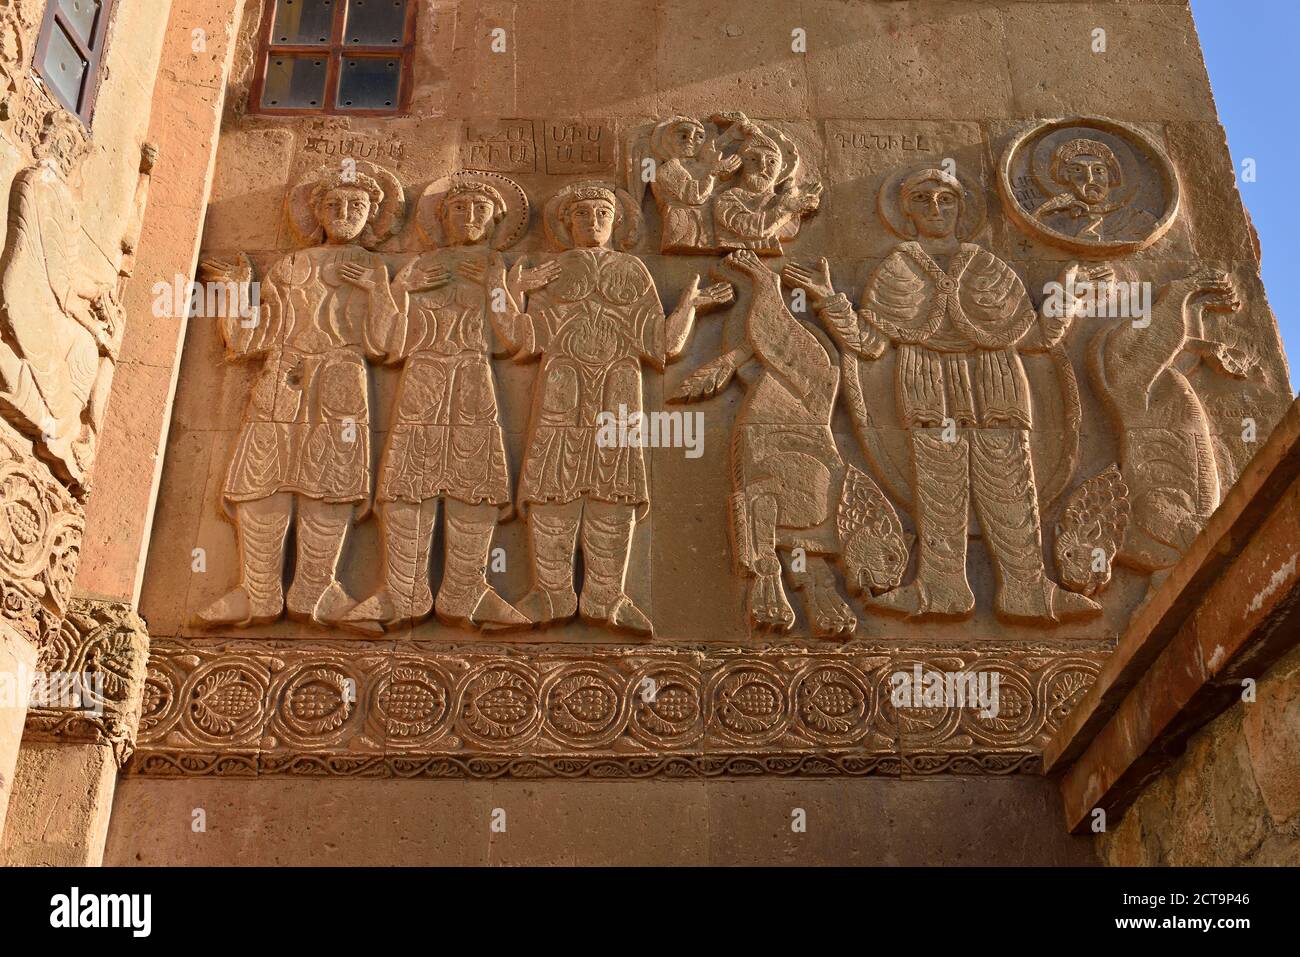 La Turquie, l'Anatolie orientale, la province de Van, Van lac, île Akdamar, reliefs sur les murs de l'église cathédrale arménienne de la Sainte Croix Banque D'Images